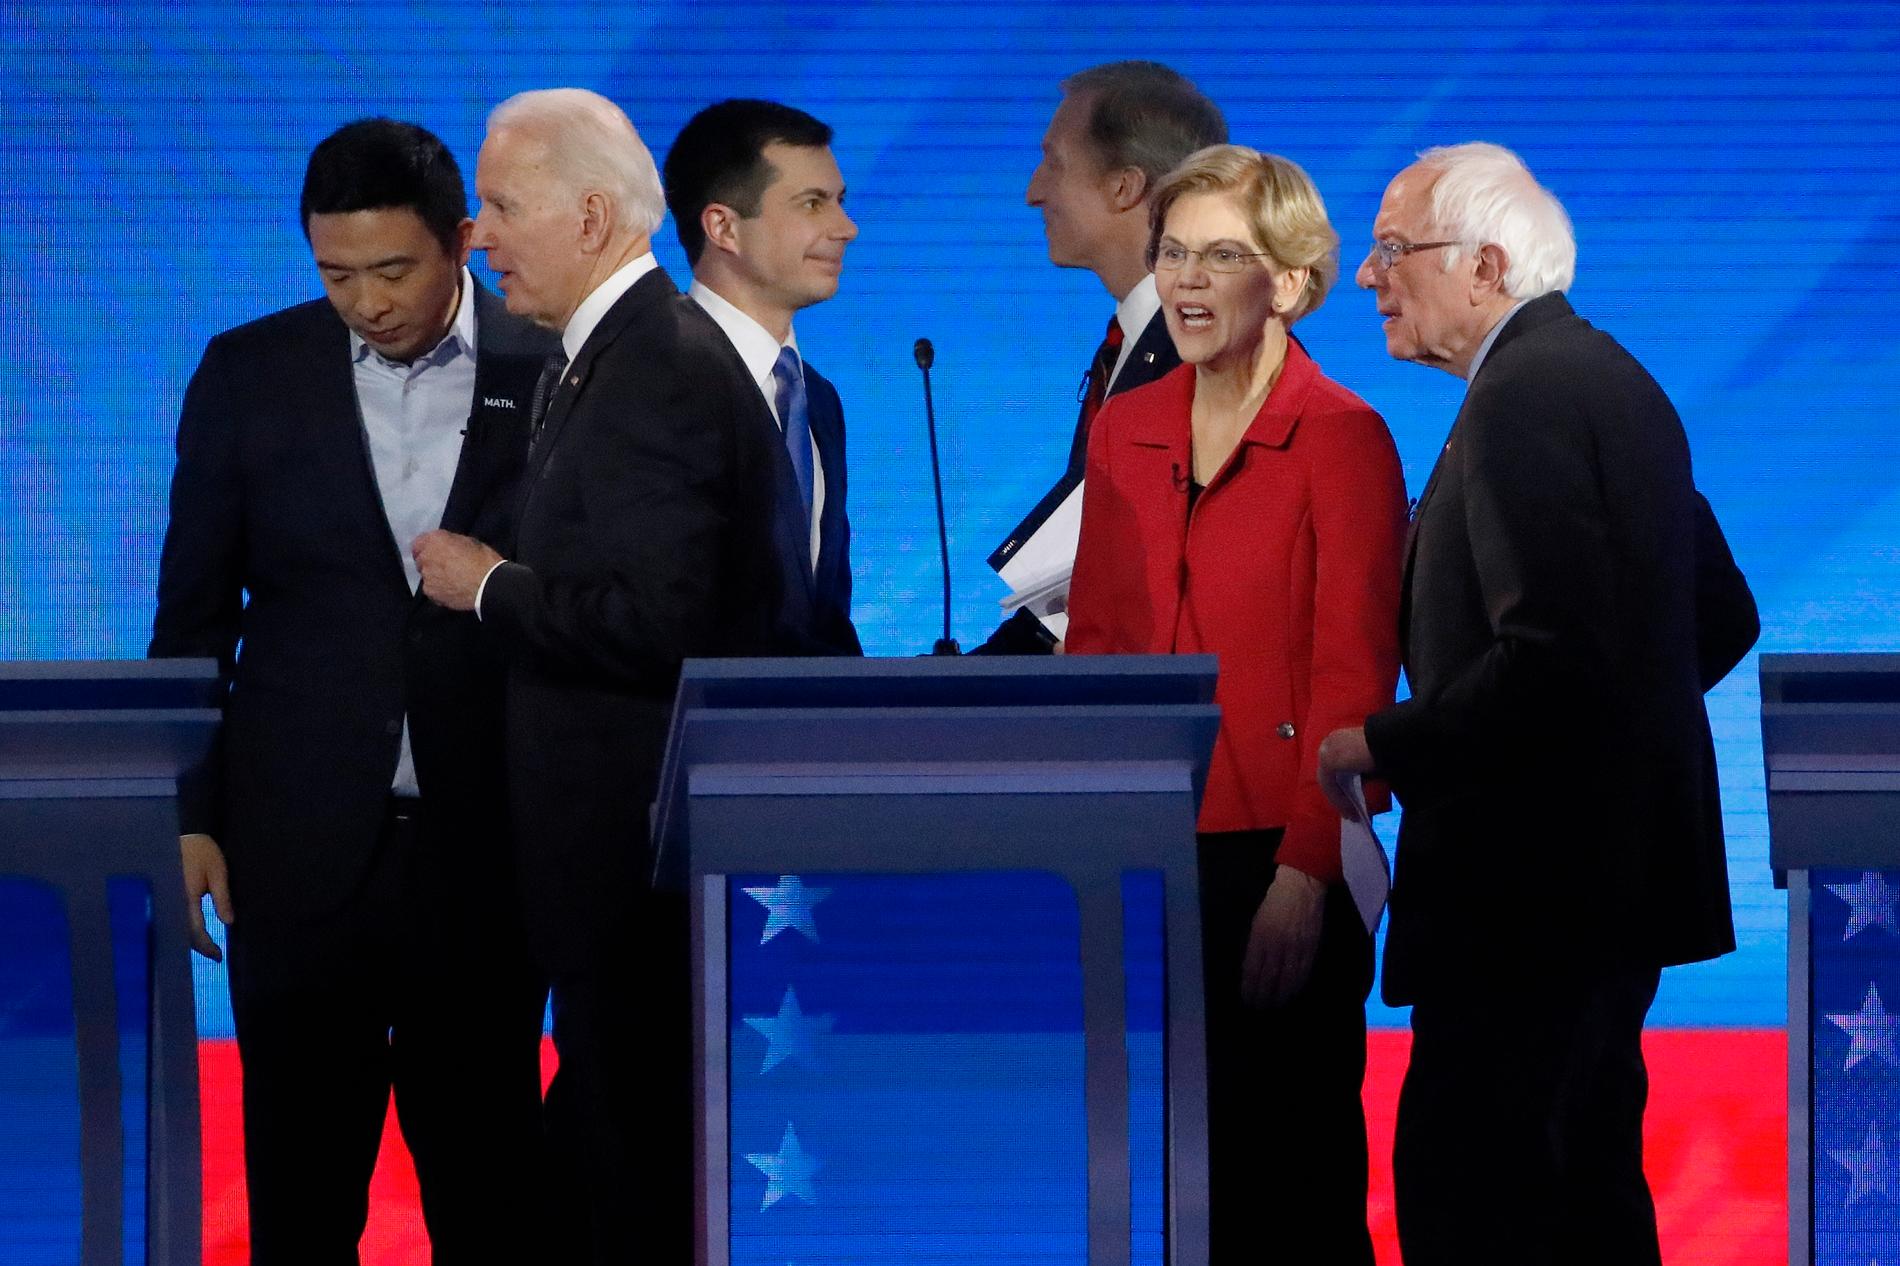 Aspirerande presidentkandidaterna Andrew Yang, Joe Biden, Pete Buttigieg, Tom Steyer, Elizabeth Warren och Bernie Sanders. Michael Bloomberg deltog inte i debatten. 